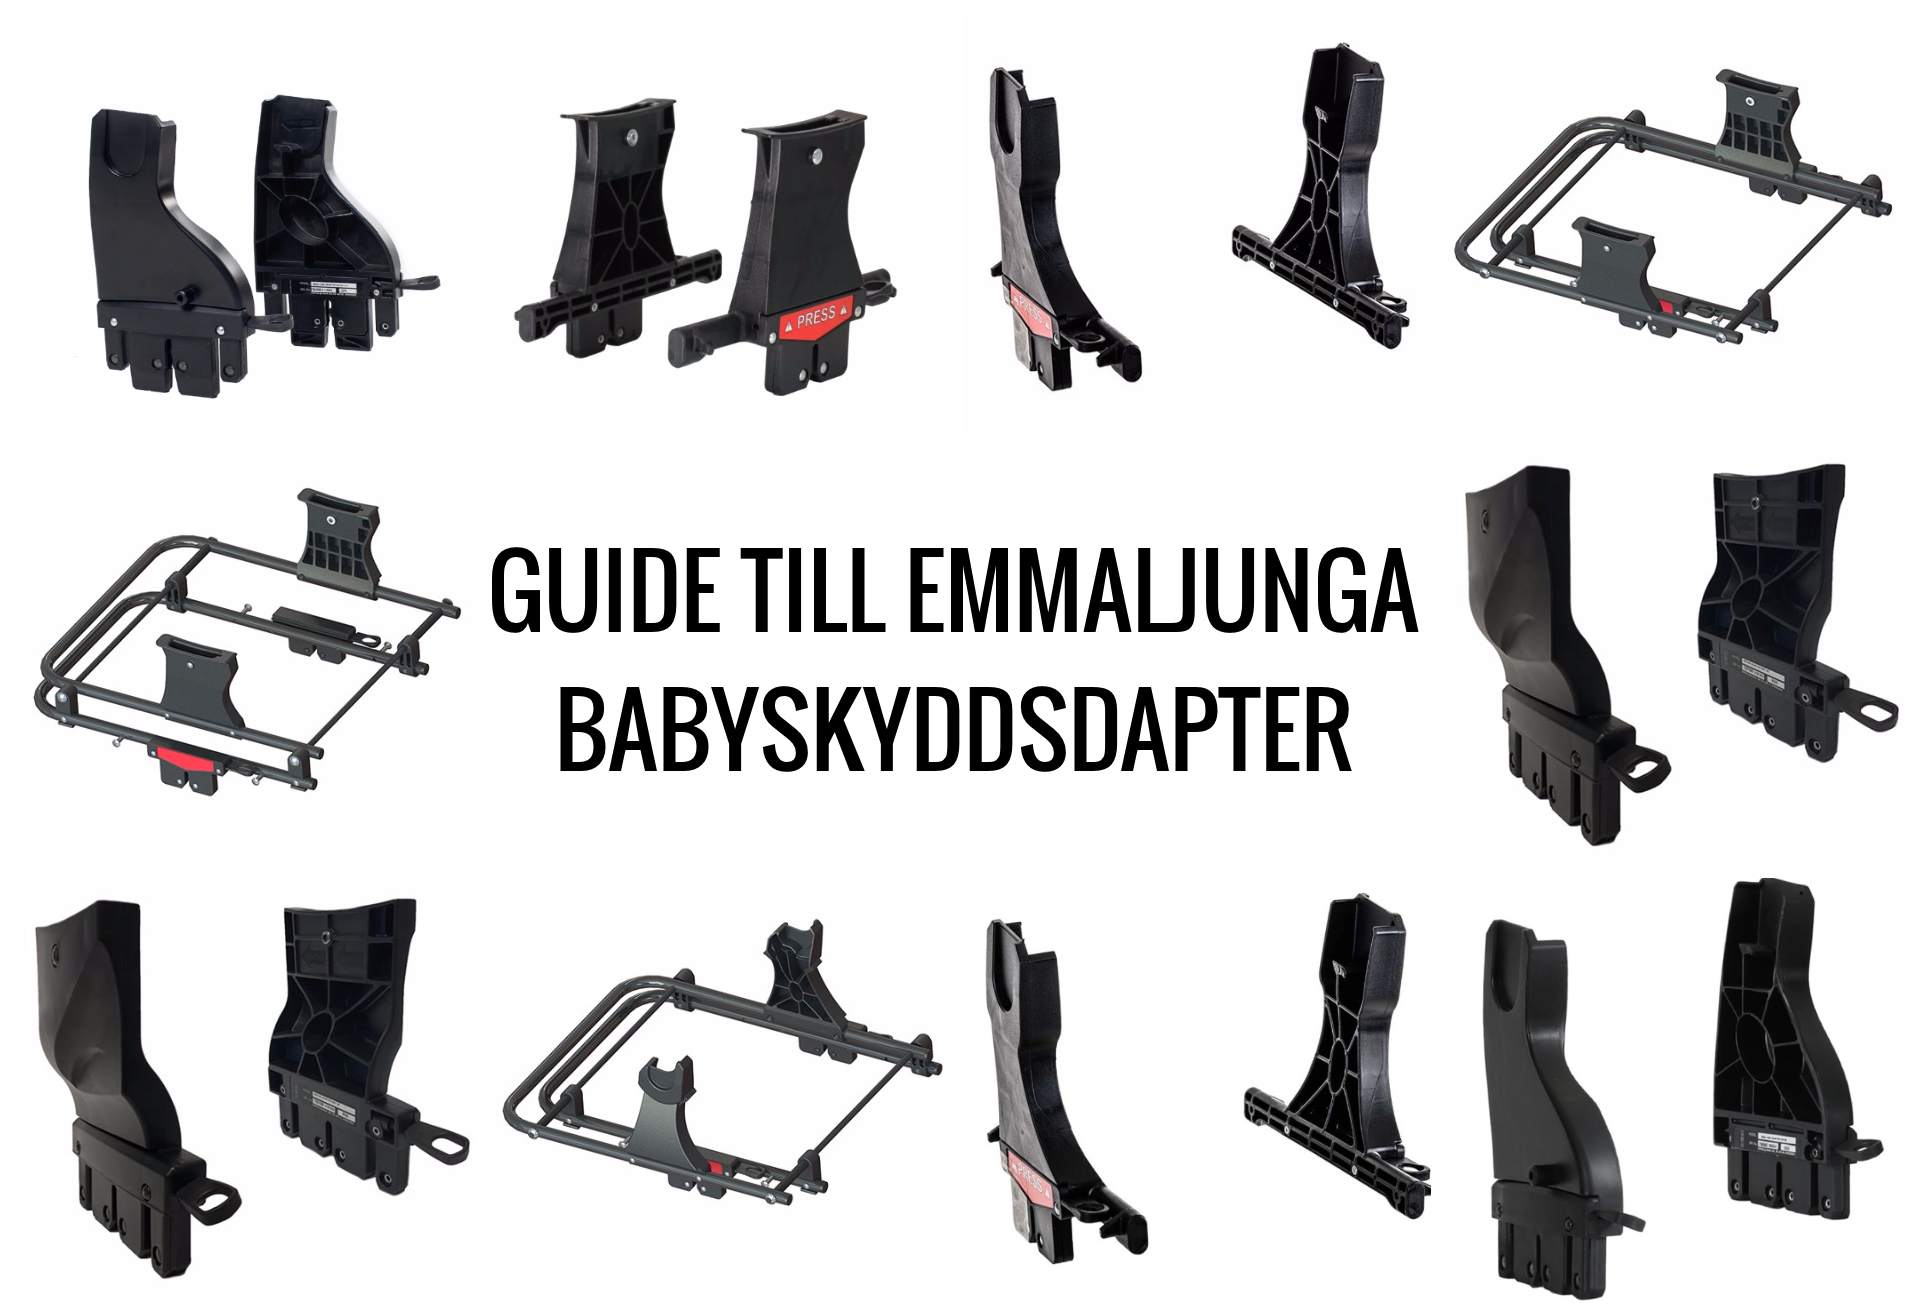 Guide till Emmaljunga Babyskyddsadapter - hitta rätt adapter för din Emmaljungavagn och ditt babyskydd